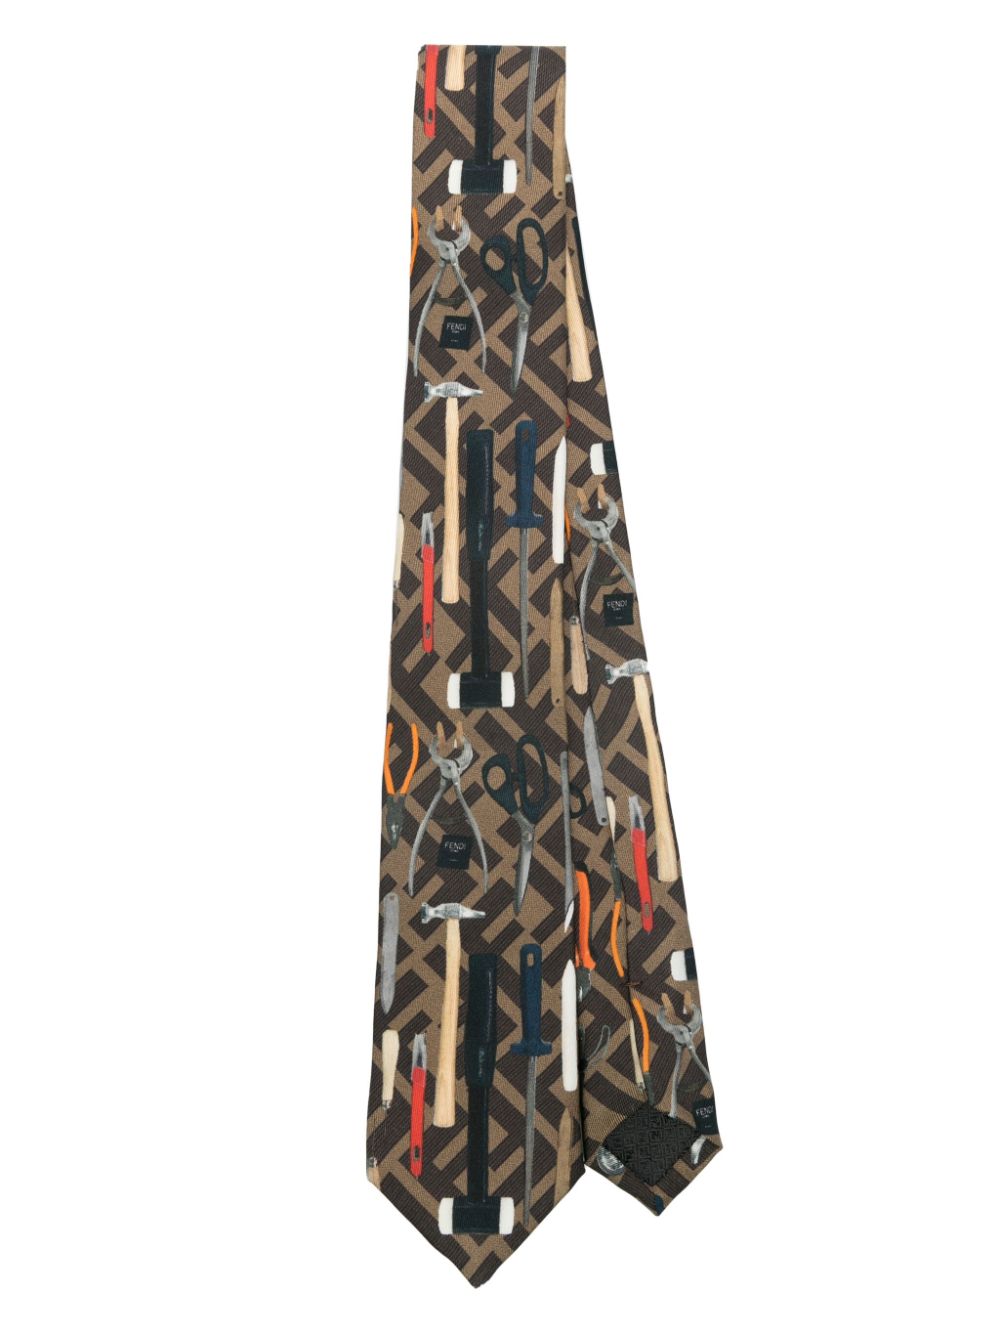 FENDI FF Jacquard-Krawatte mit Werkzeugen - Braun